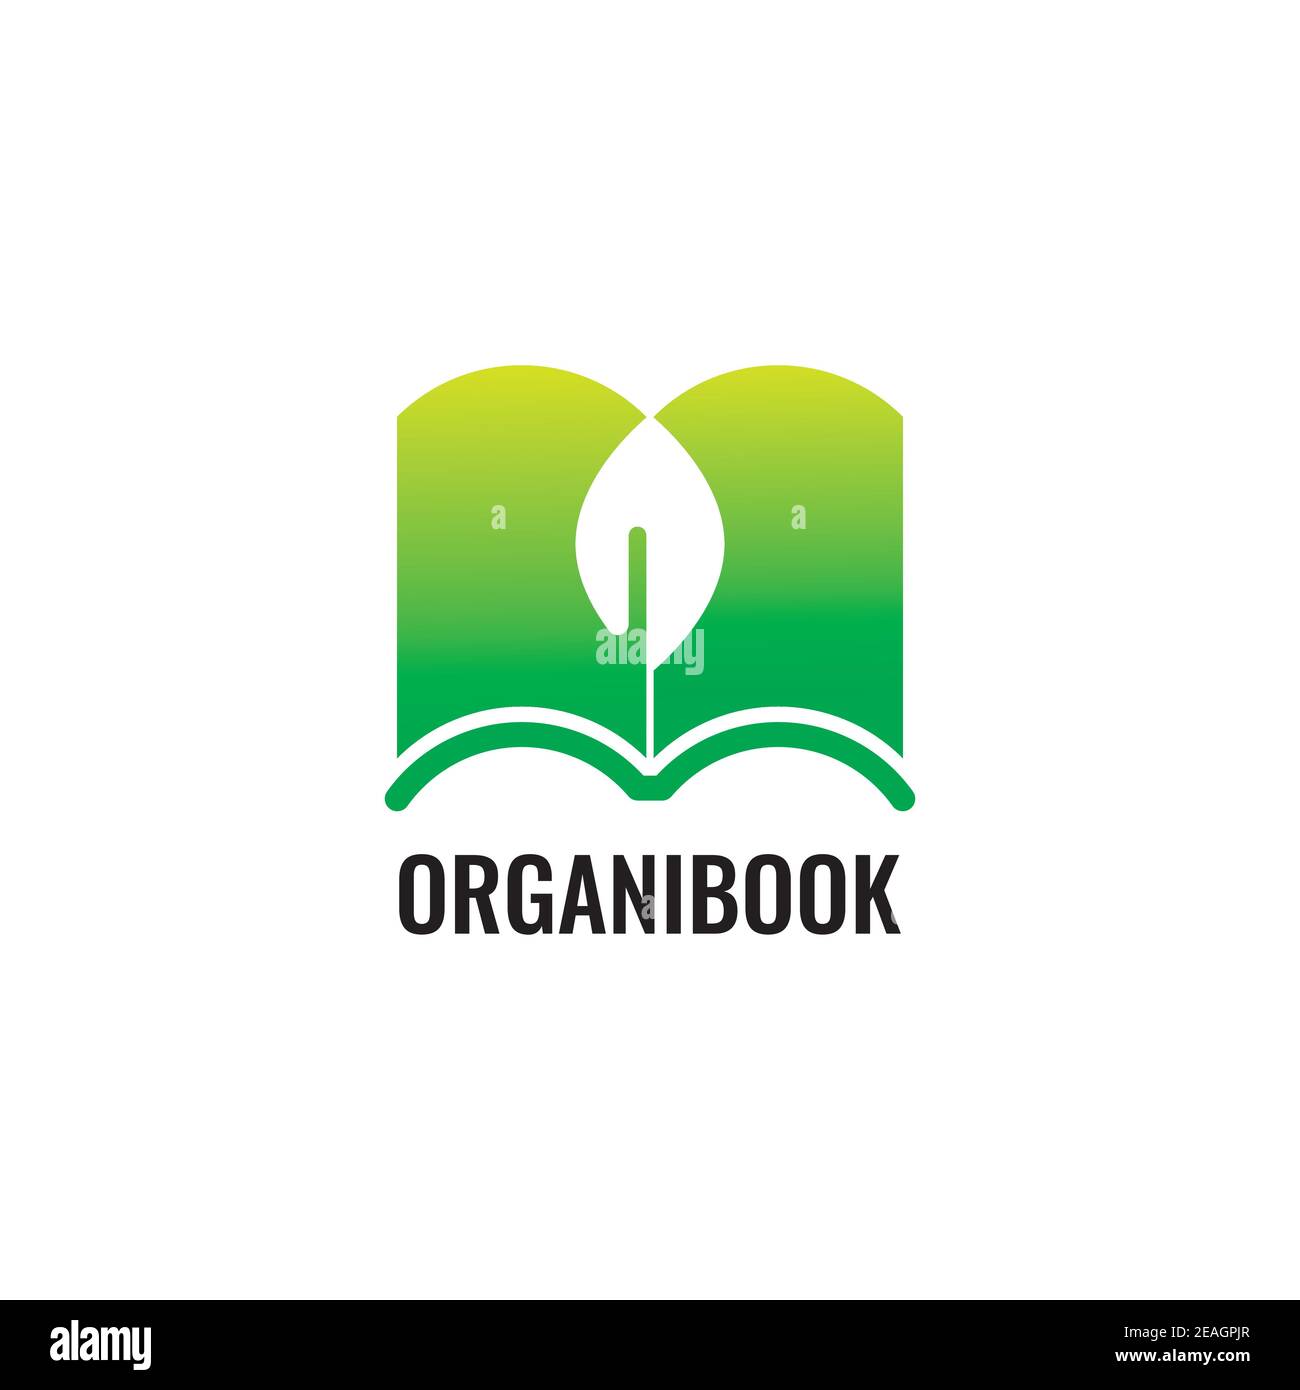 Green book illustration logo design vector template Stock Vector